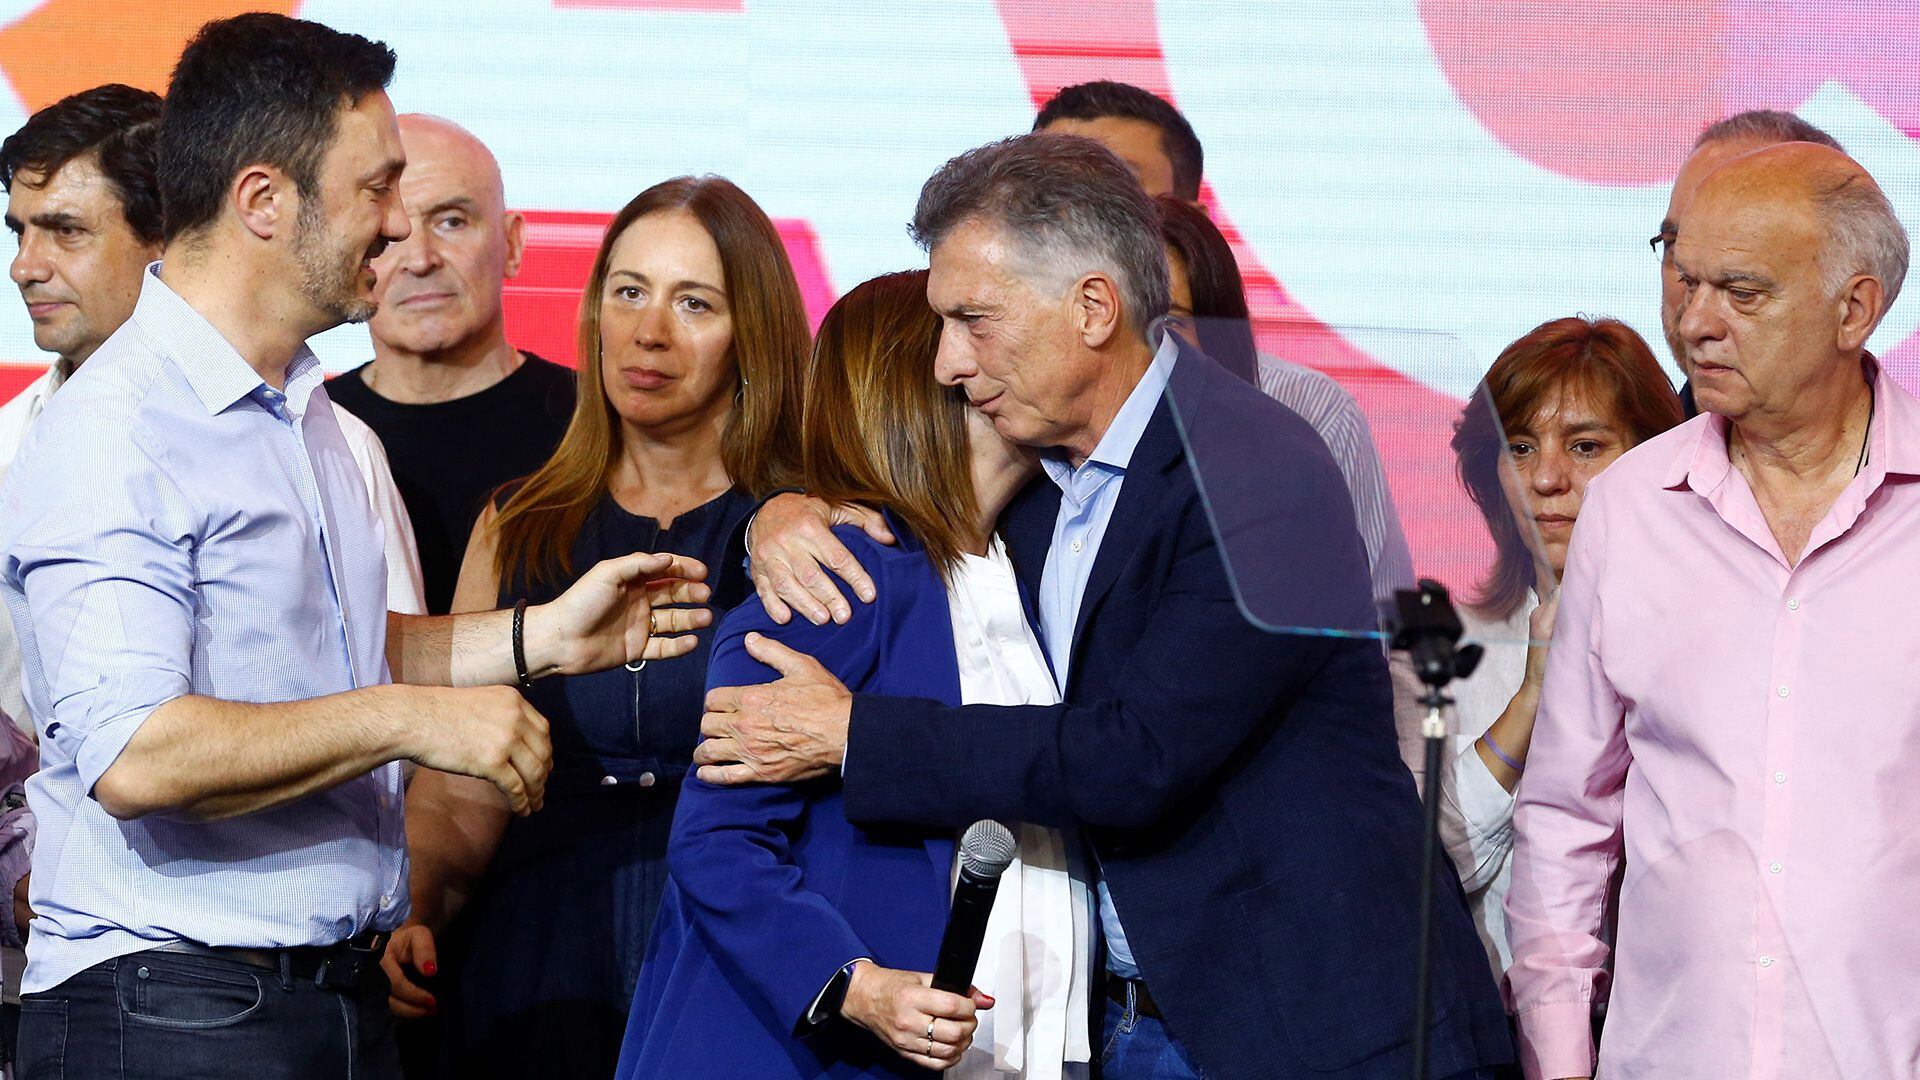 El rol de Macri en la interna de Juntos por el Cambio terminó empujando a un resultado negativo, según la opinión de los analistas  